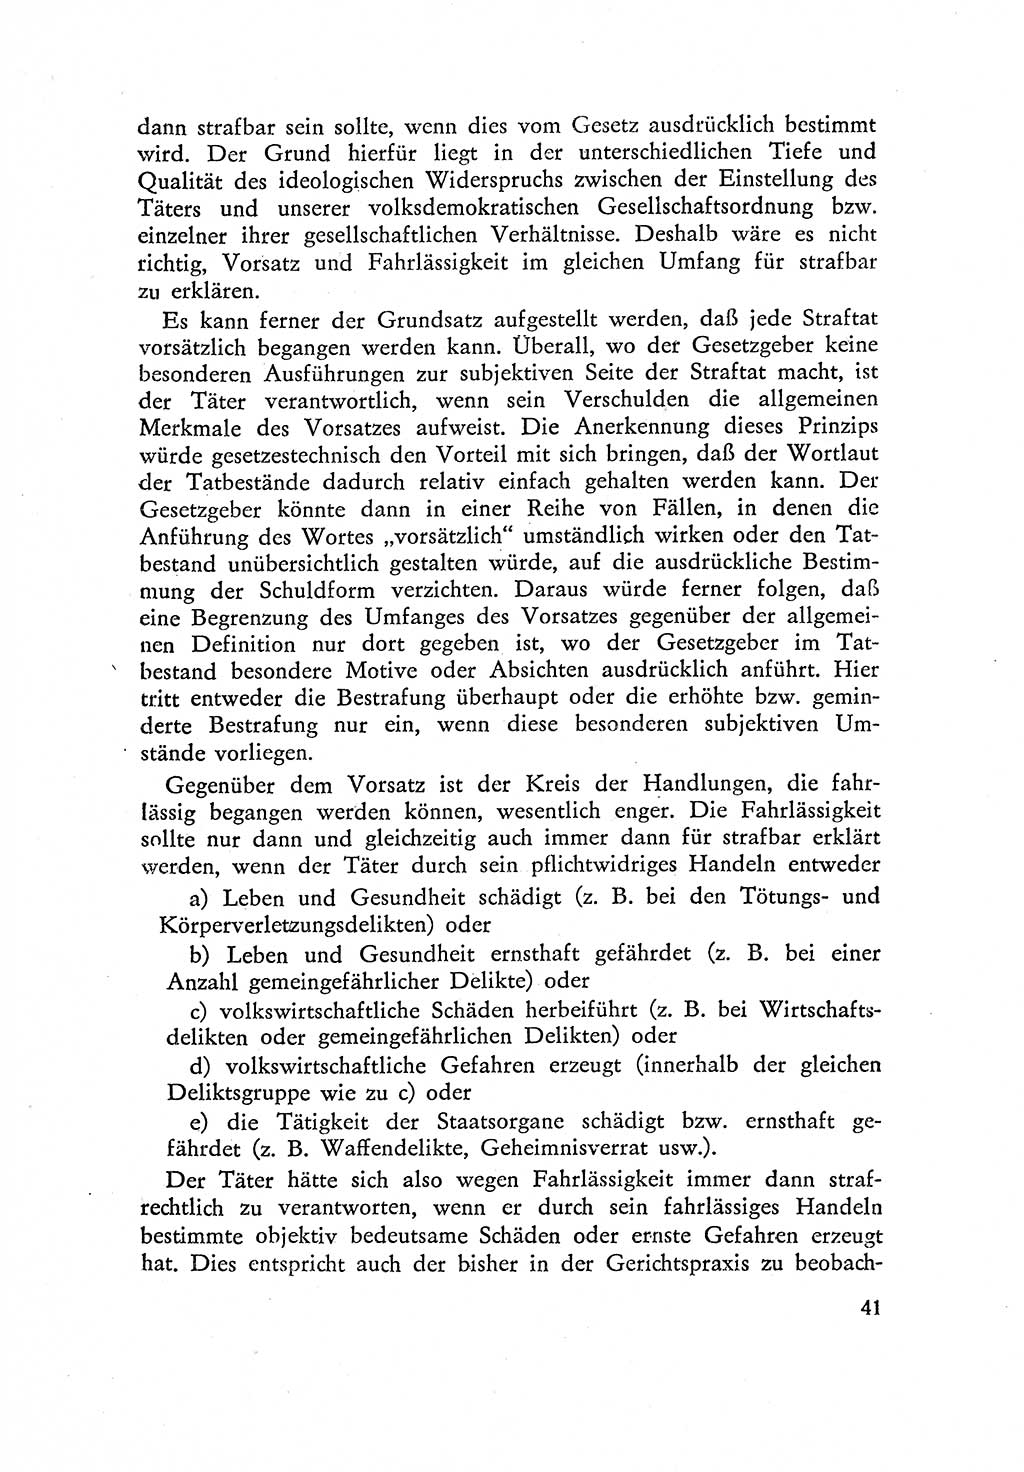 Beiträge zum Strafrecht [Deutsche Demokratische Republik (DDR)] 1959, Seite 41 (Beitr. Strafr. DDR 1959, S. 41)